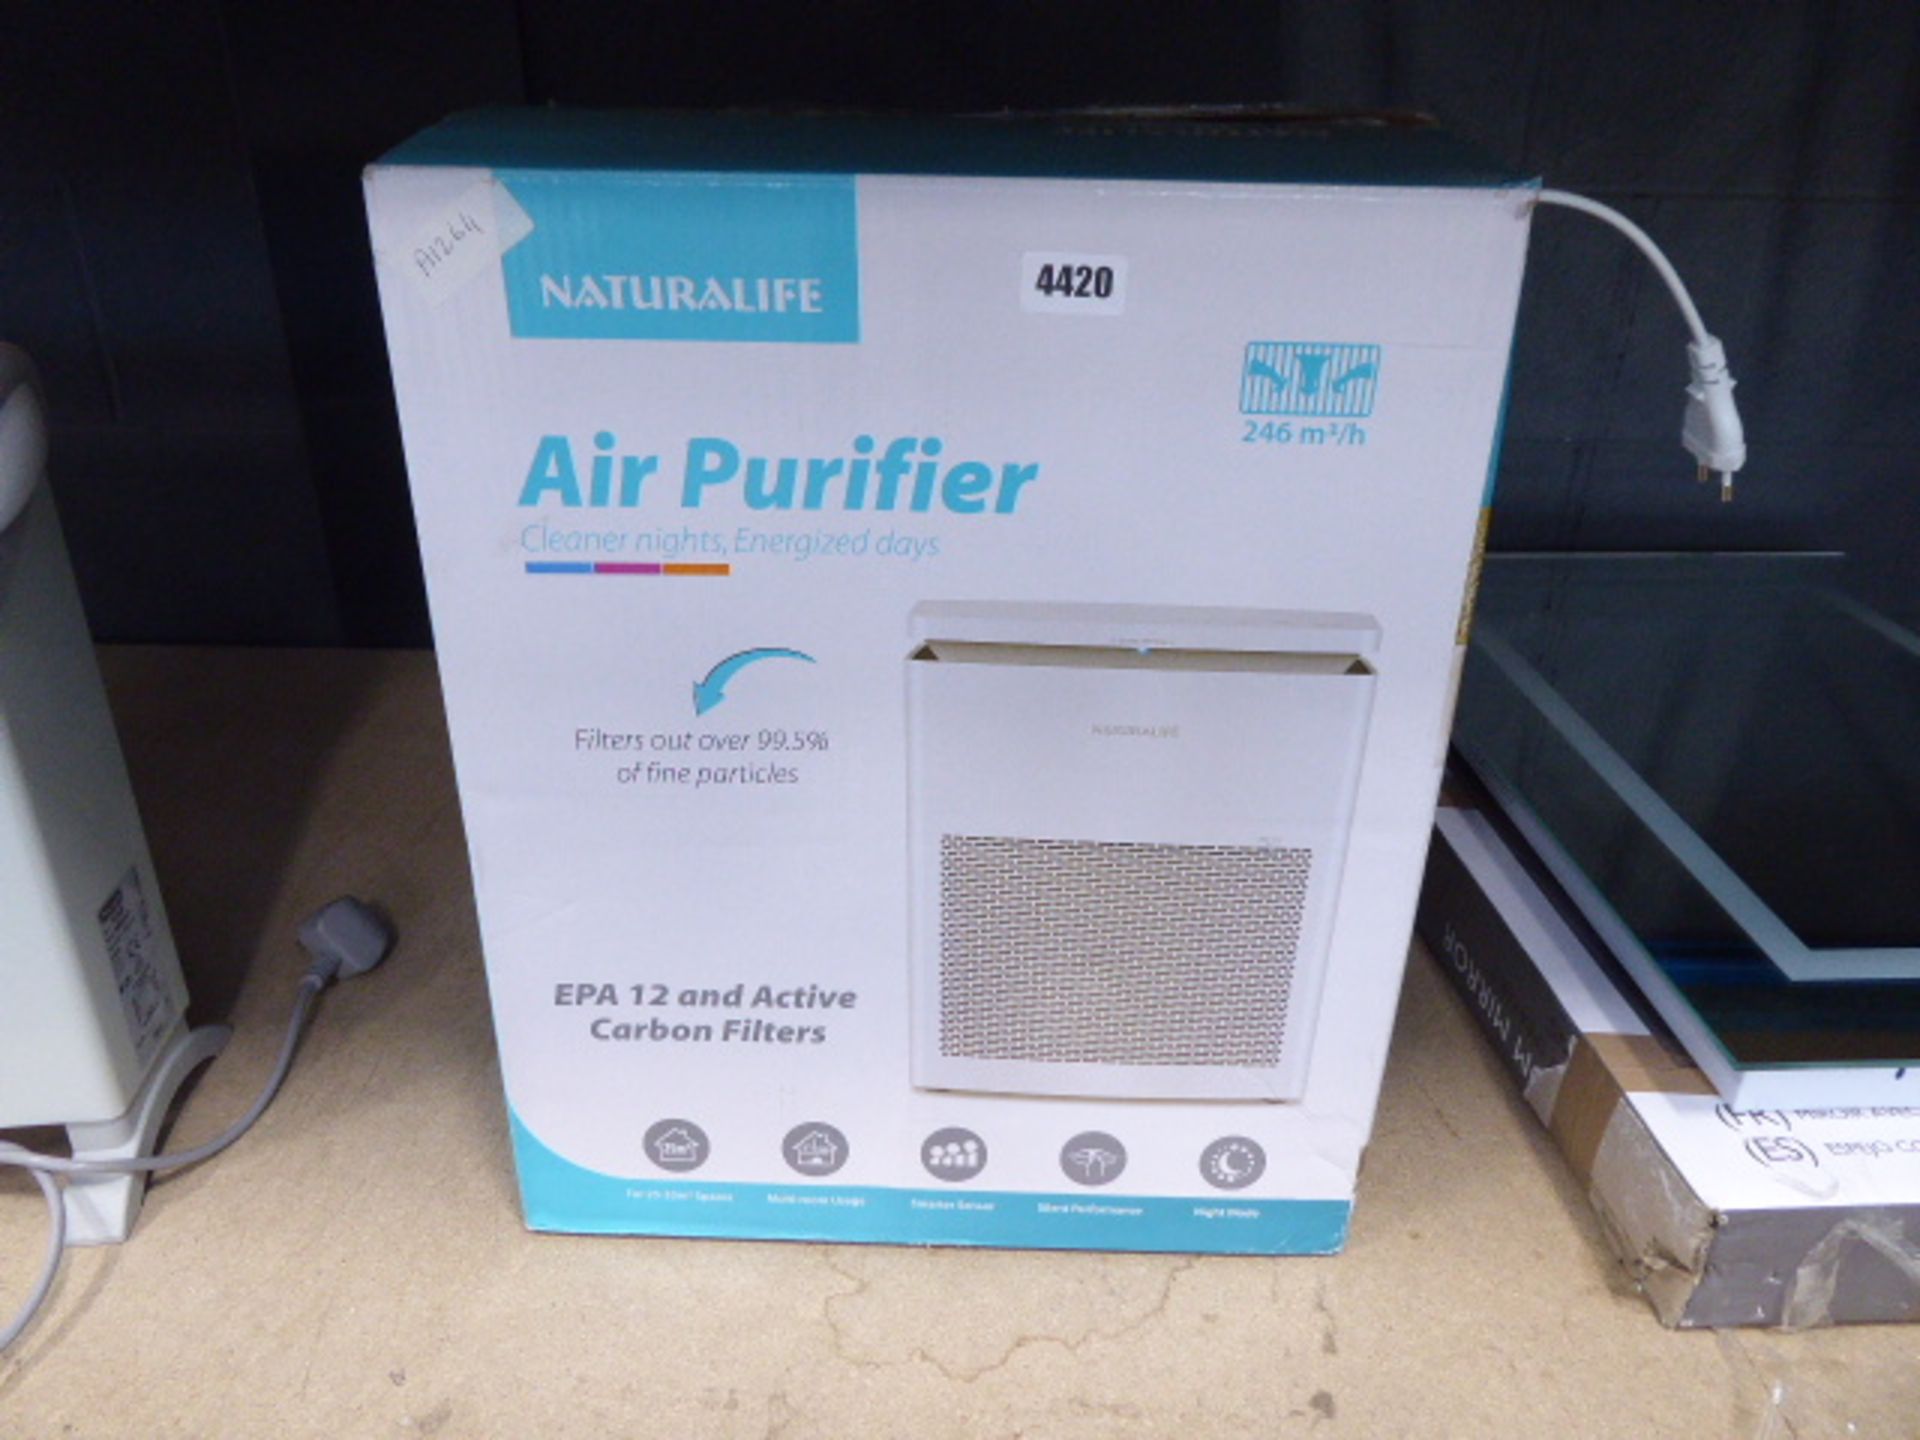 Neutralife air purifier (boxed)